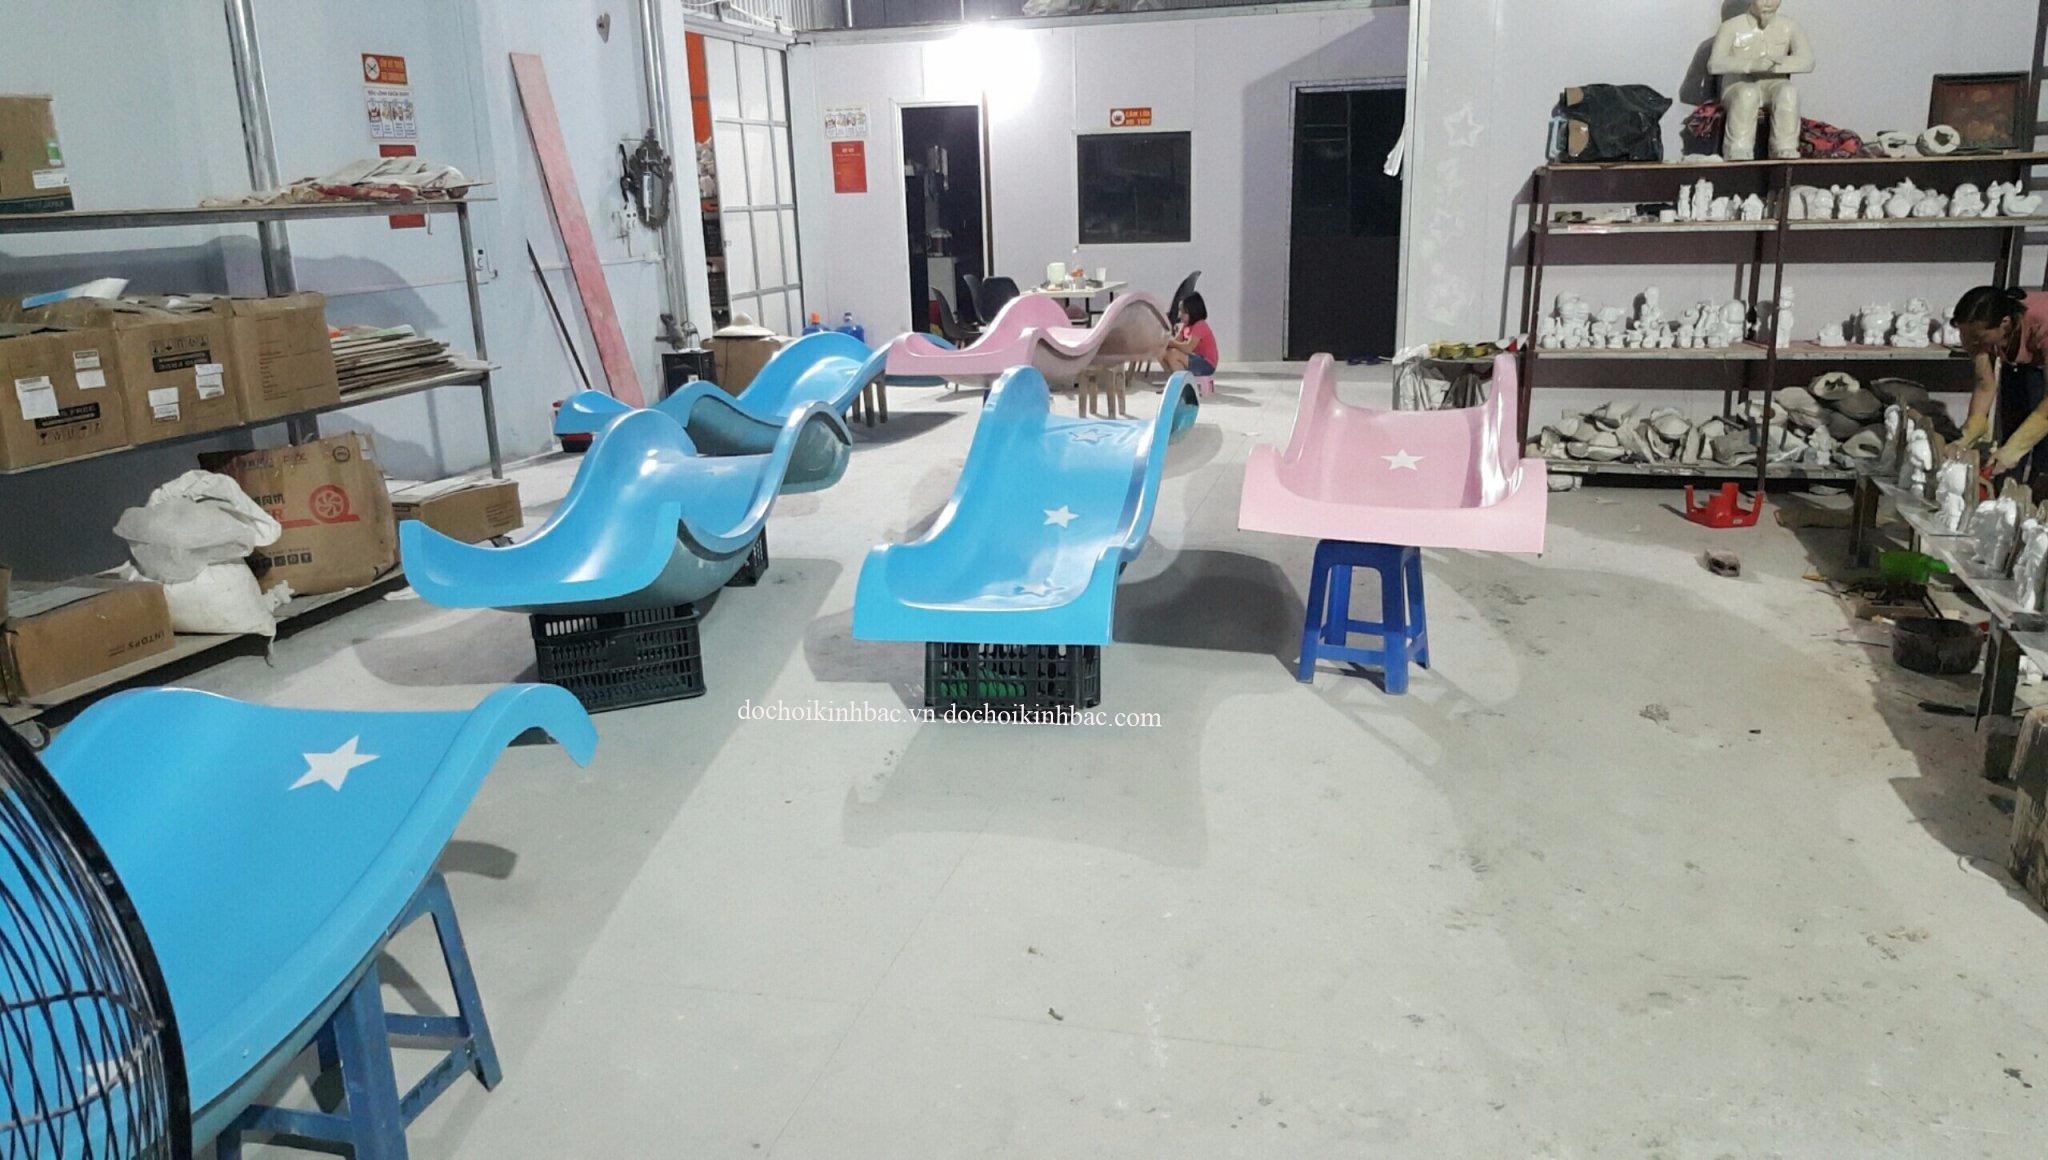 Đồ chơi Kinh Bắc cung cấp máng trượt composite tại Tân Phong, TP Lai Châu, tỉnh Lai Châu